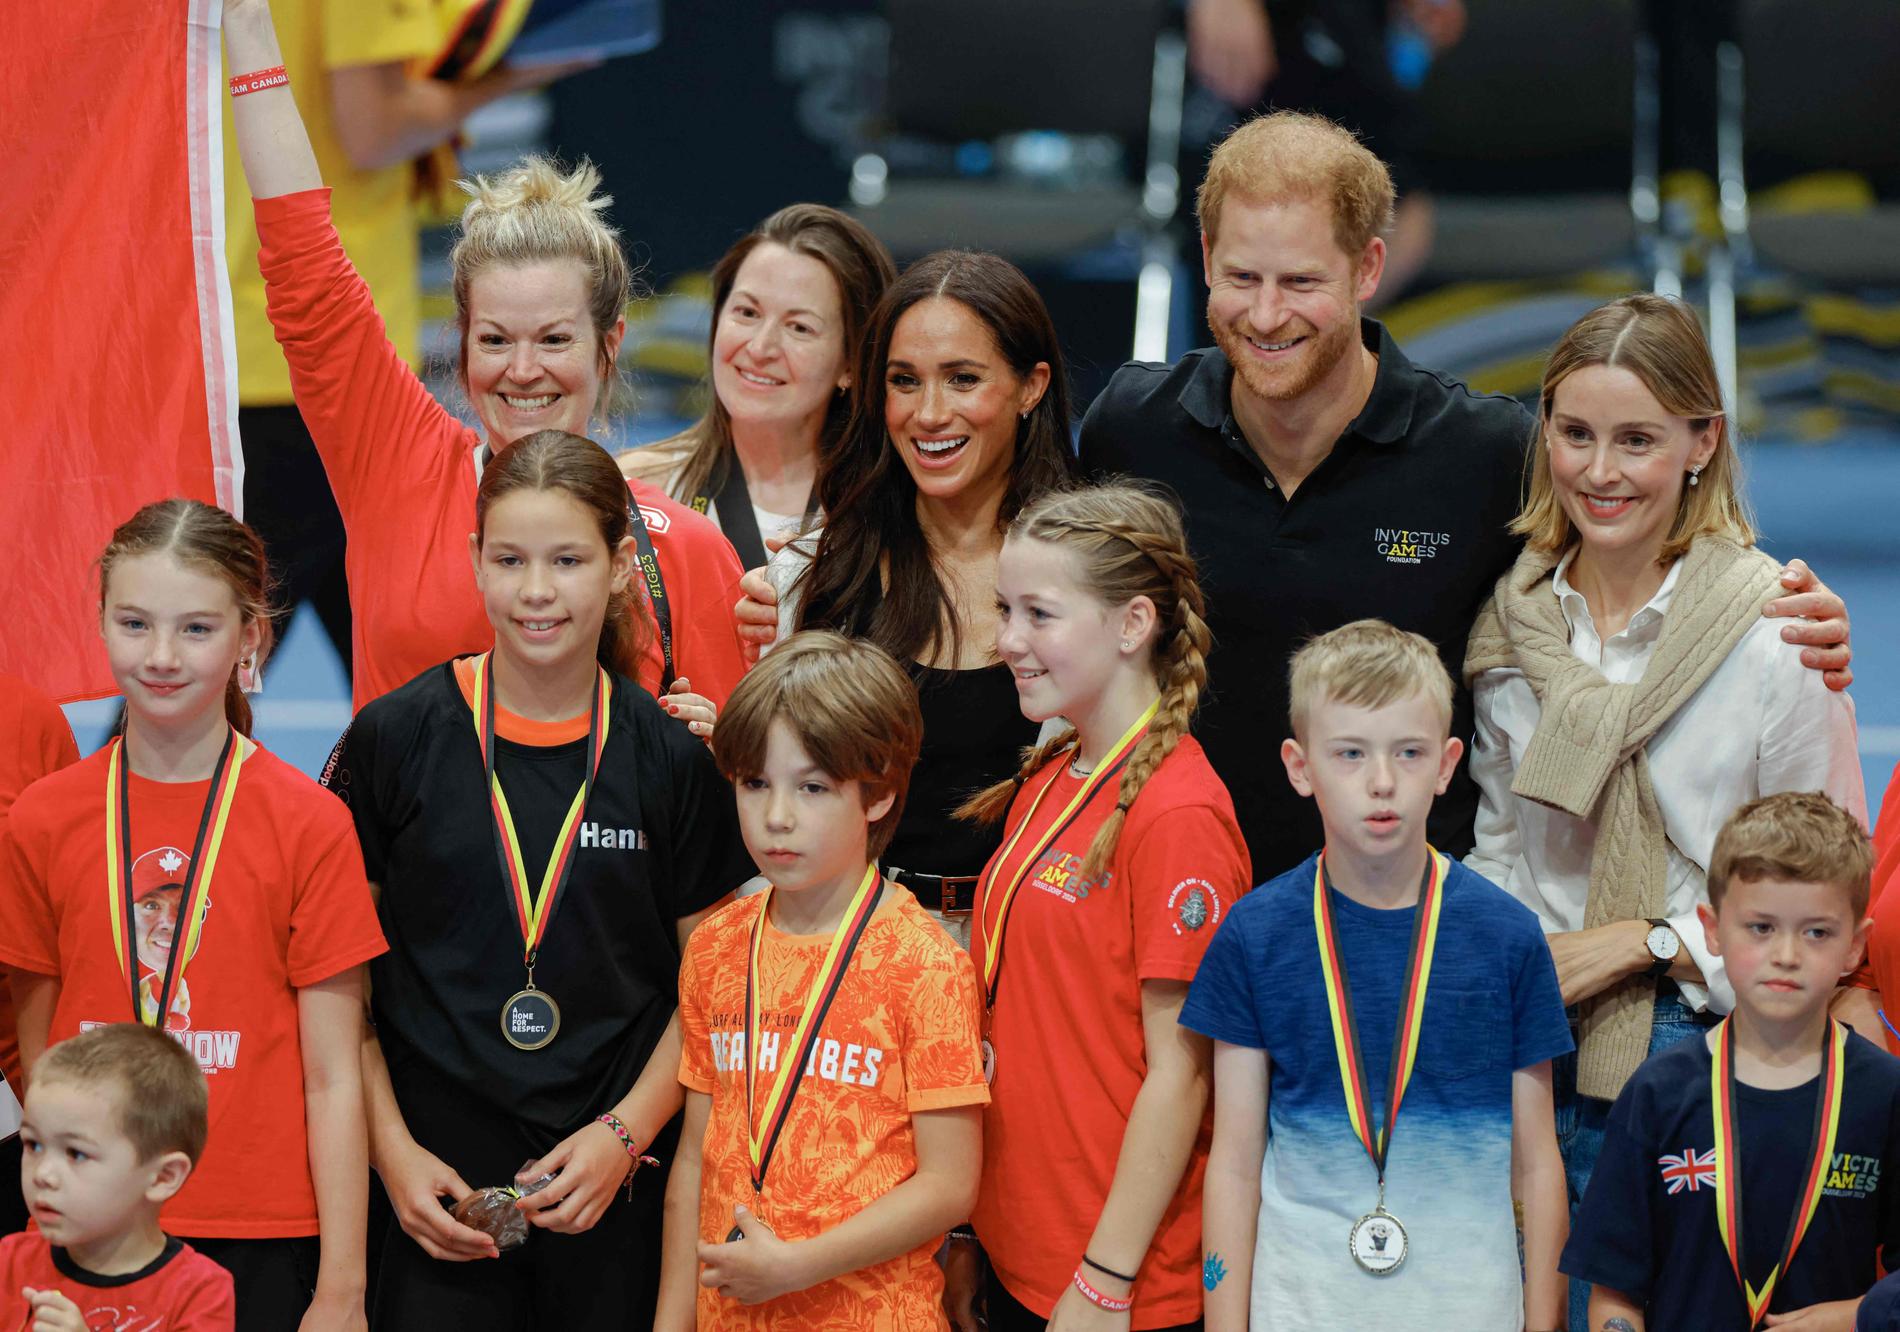 STAR TEAM: la duchessa Meghan e il principe Harry posano con i vincitori delle medaglie durante l'evento di mercoledì.